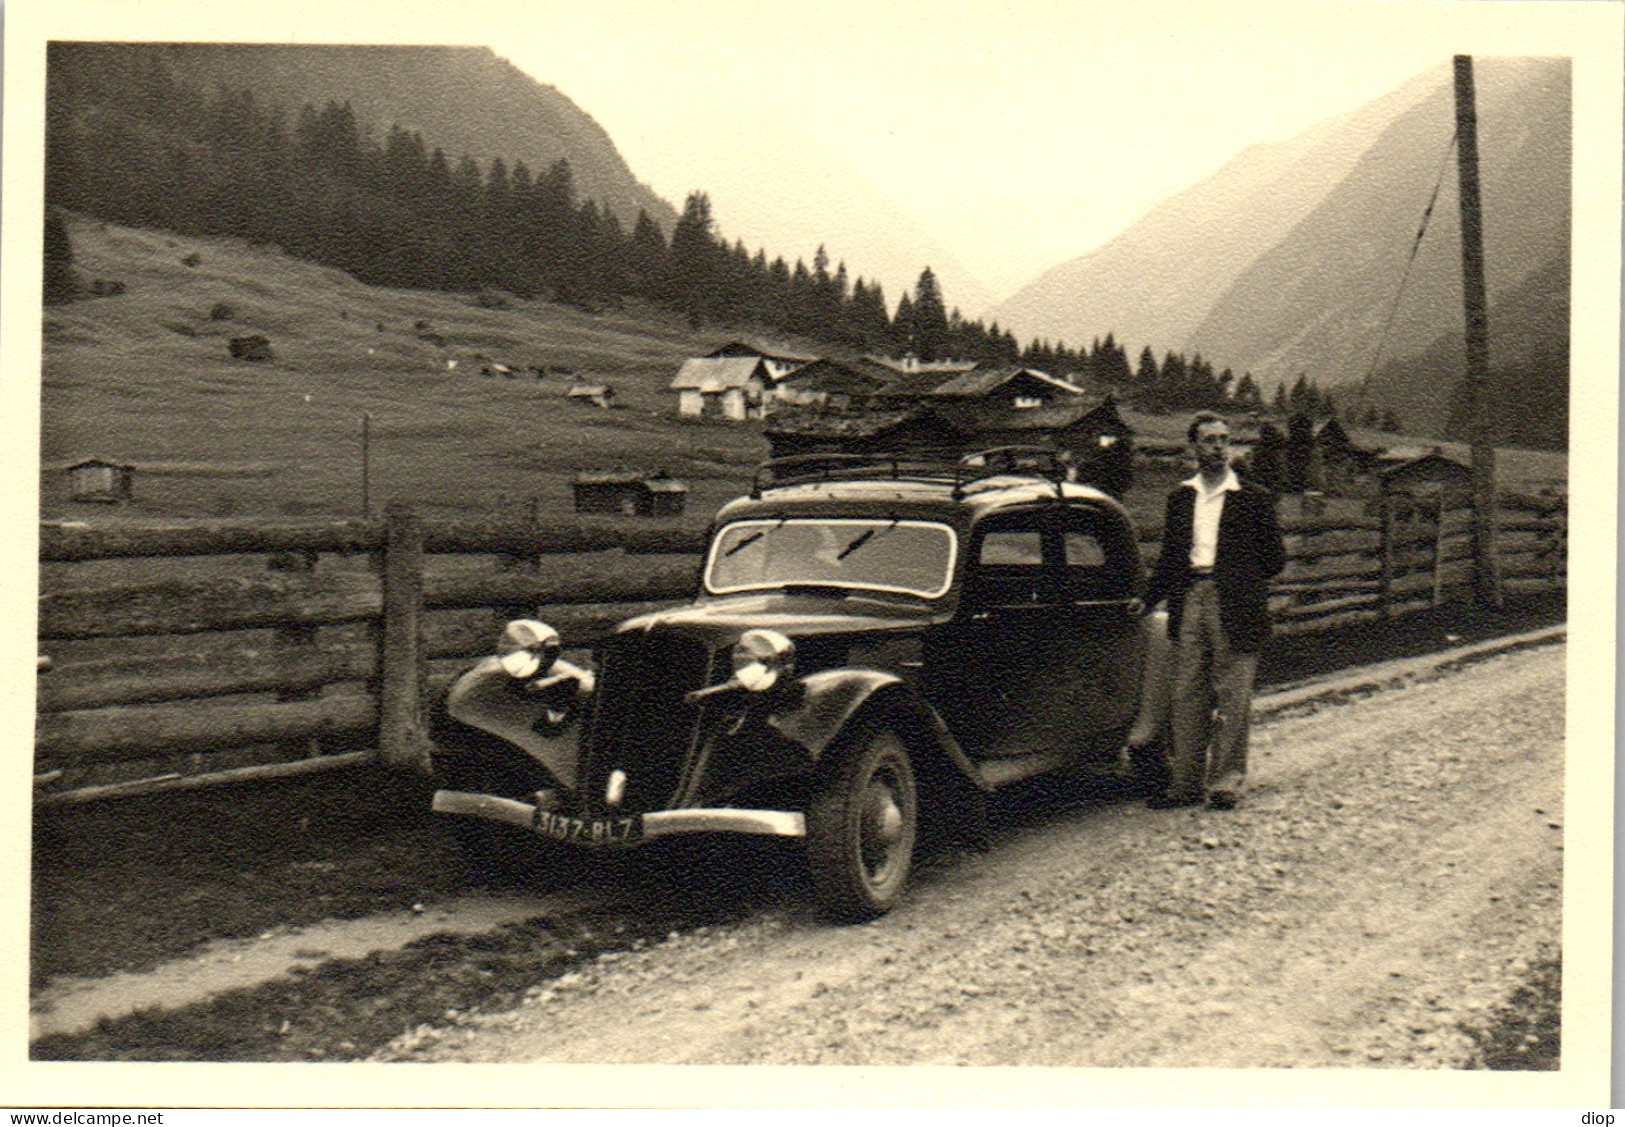 Photographie Photo Vintage Snapshot Amateur Automobile Voiture Auto  - Cars